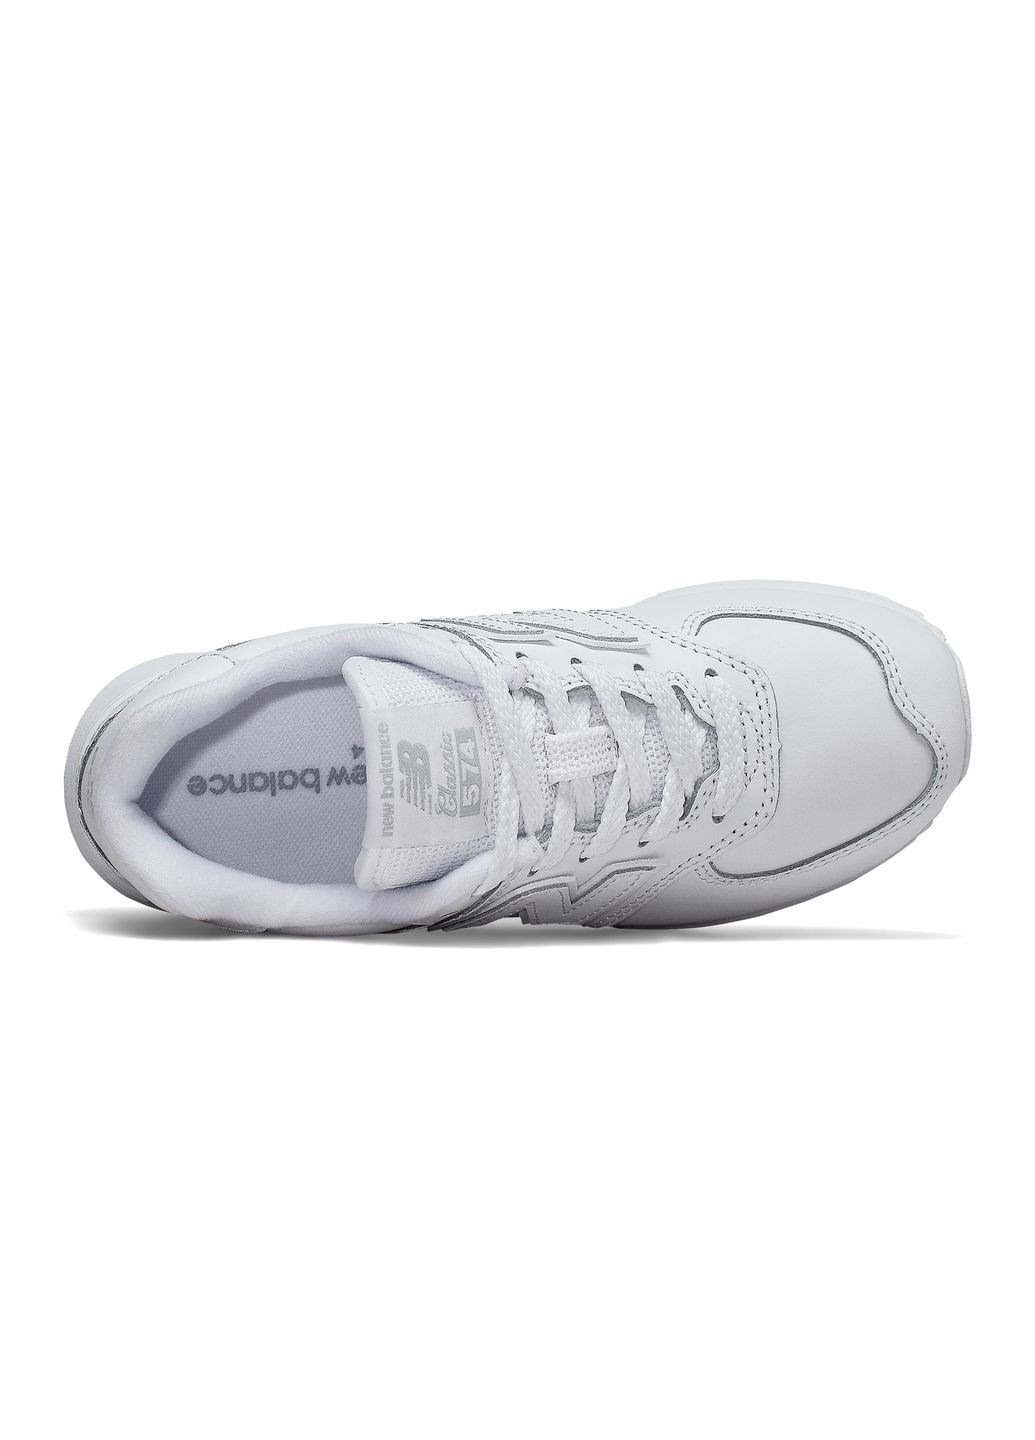 Белые демисезонные женские кроссовки gc 574 erm white 35.5/3.5/22.7 см New Balance